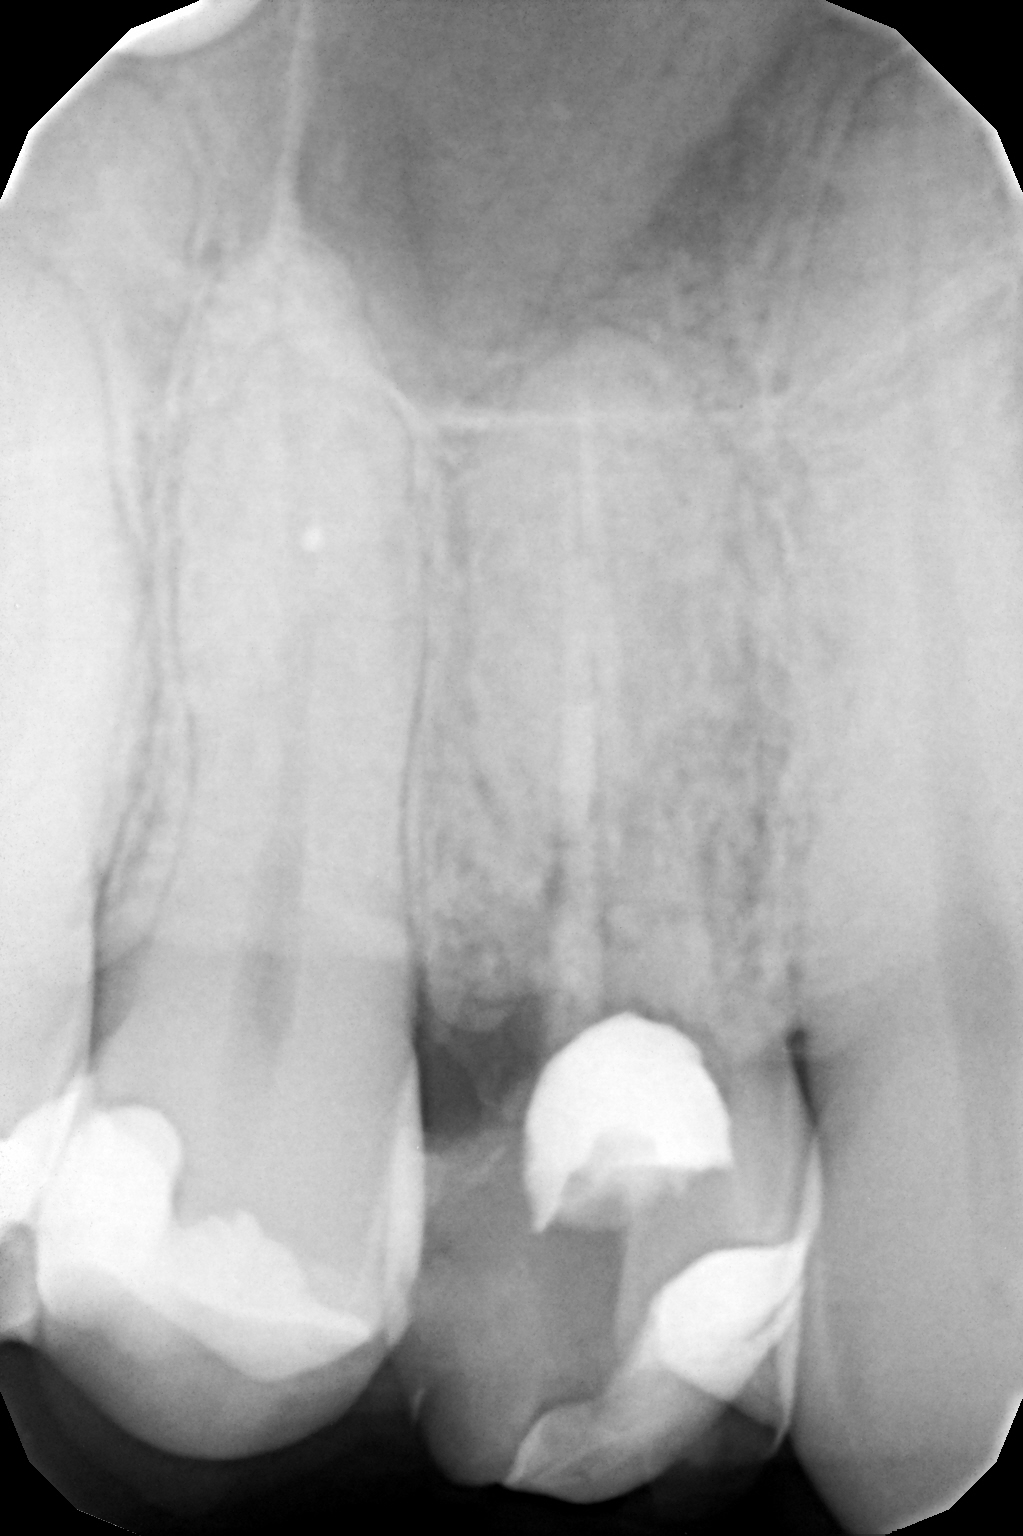 По данным RVG- исследования: распространение кариозного процесса на корень зуба, несостоятельное эндодонтическое лечение корневых каналов, проведенное ранее